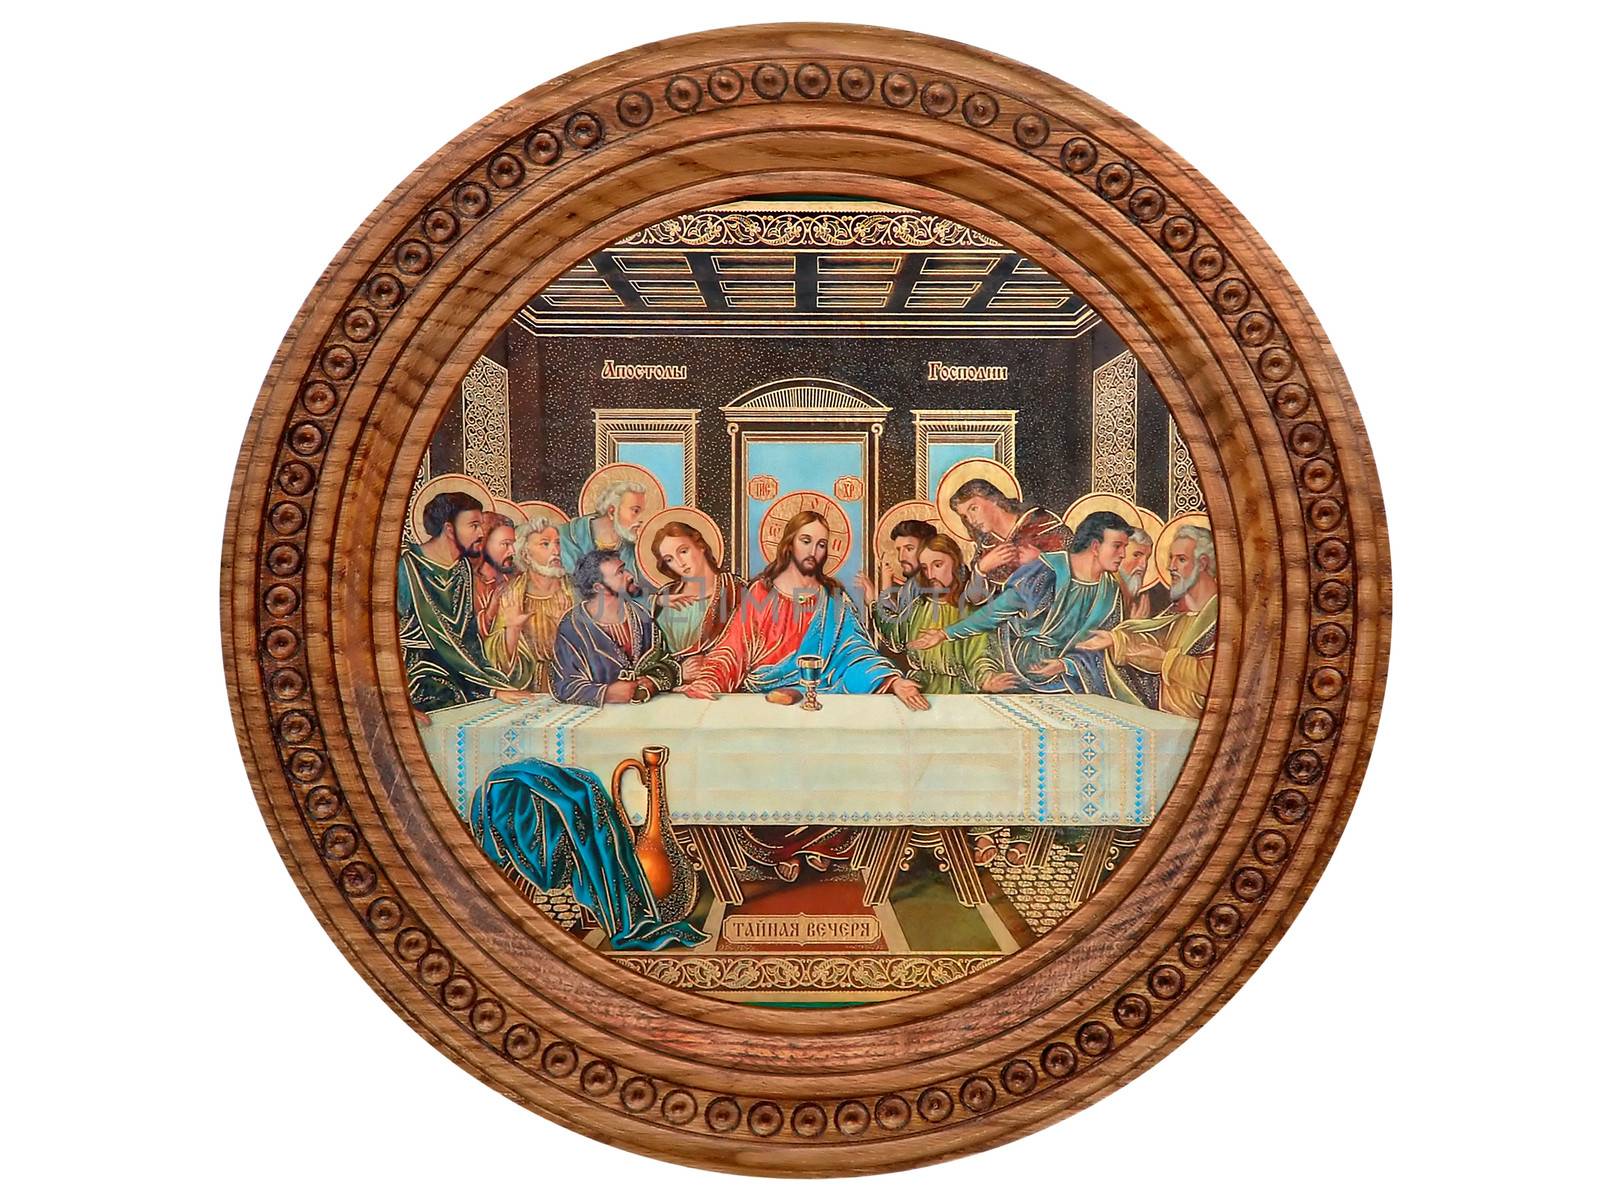 Reproduction mural painting by Leonardo da Vinci in the refectory of the Convent of Santa Maria della Grazie